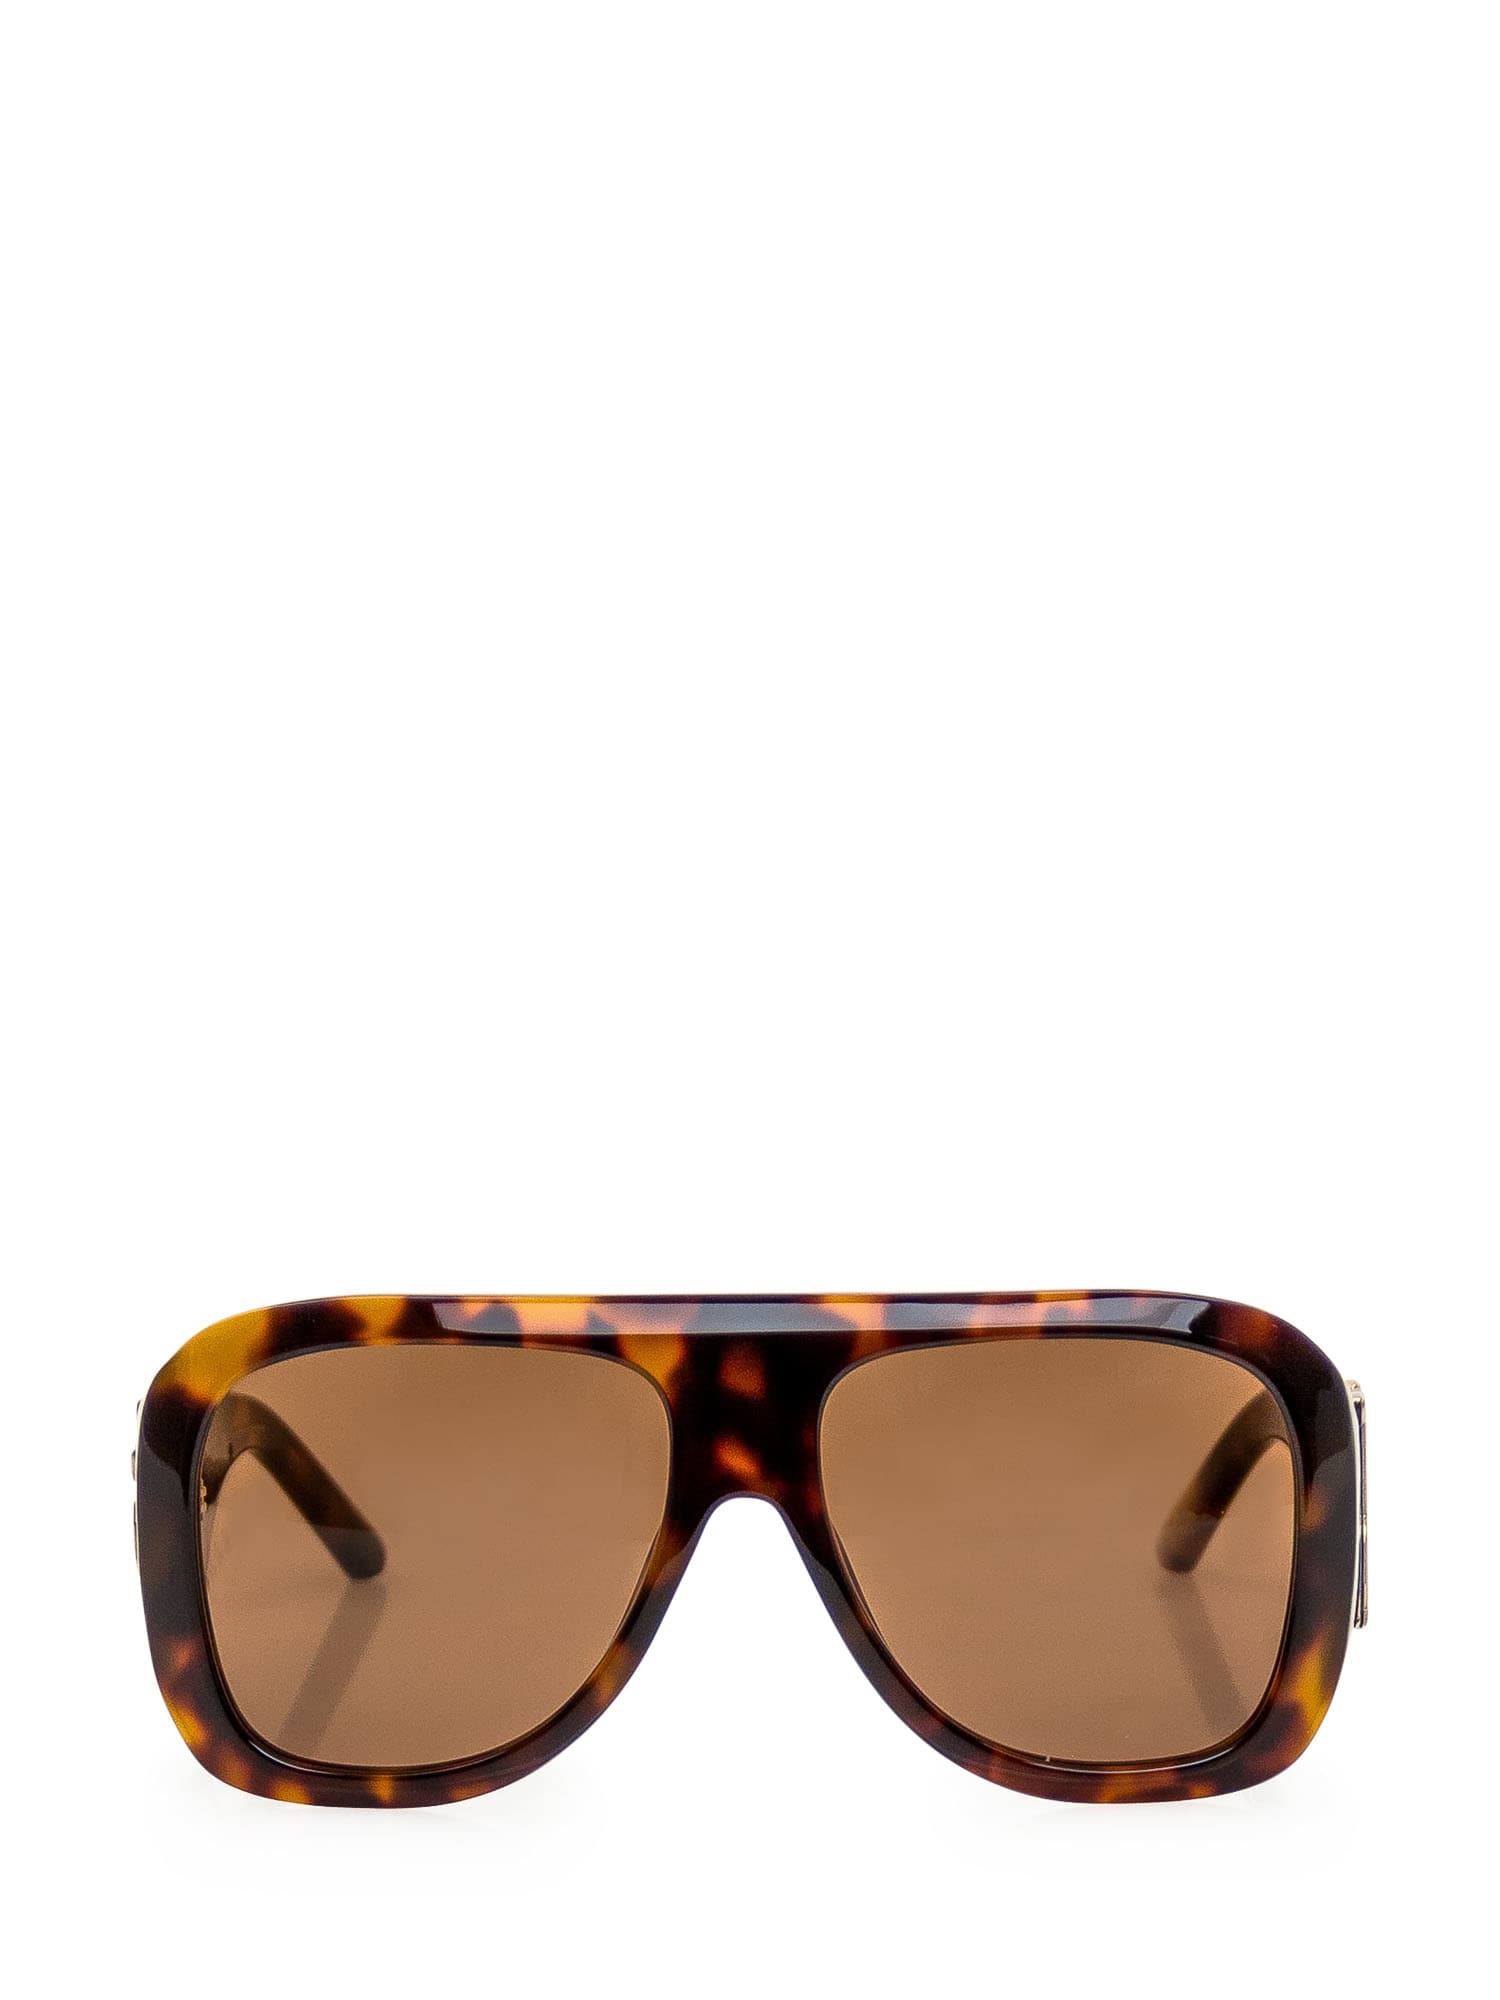 Sonoma Sunglasses